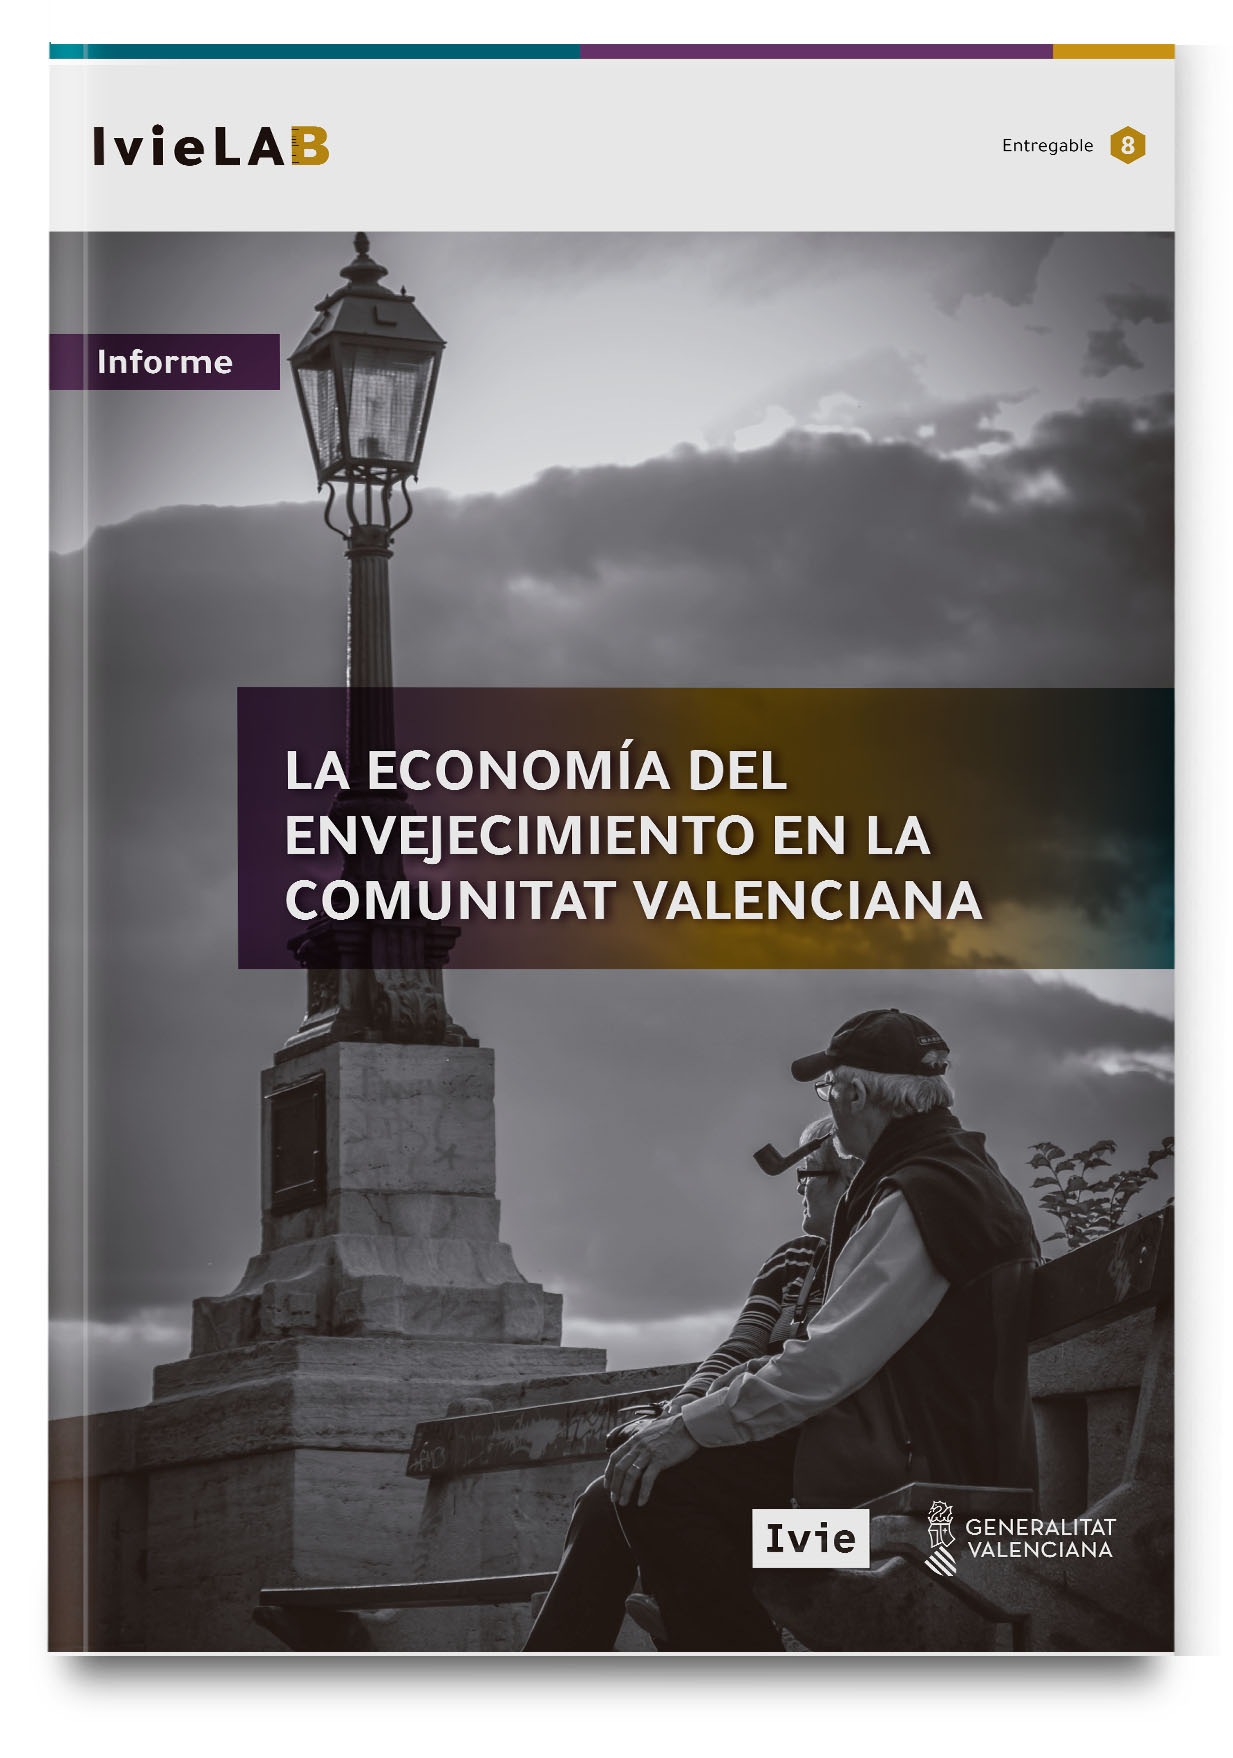 IvieLAB: La economía del envejecimiento en la Comunitat Valenciana